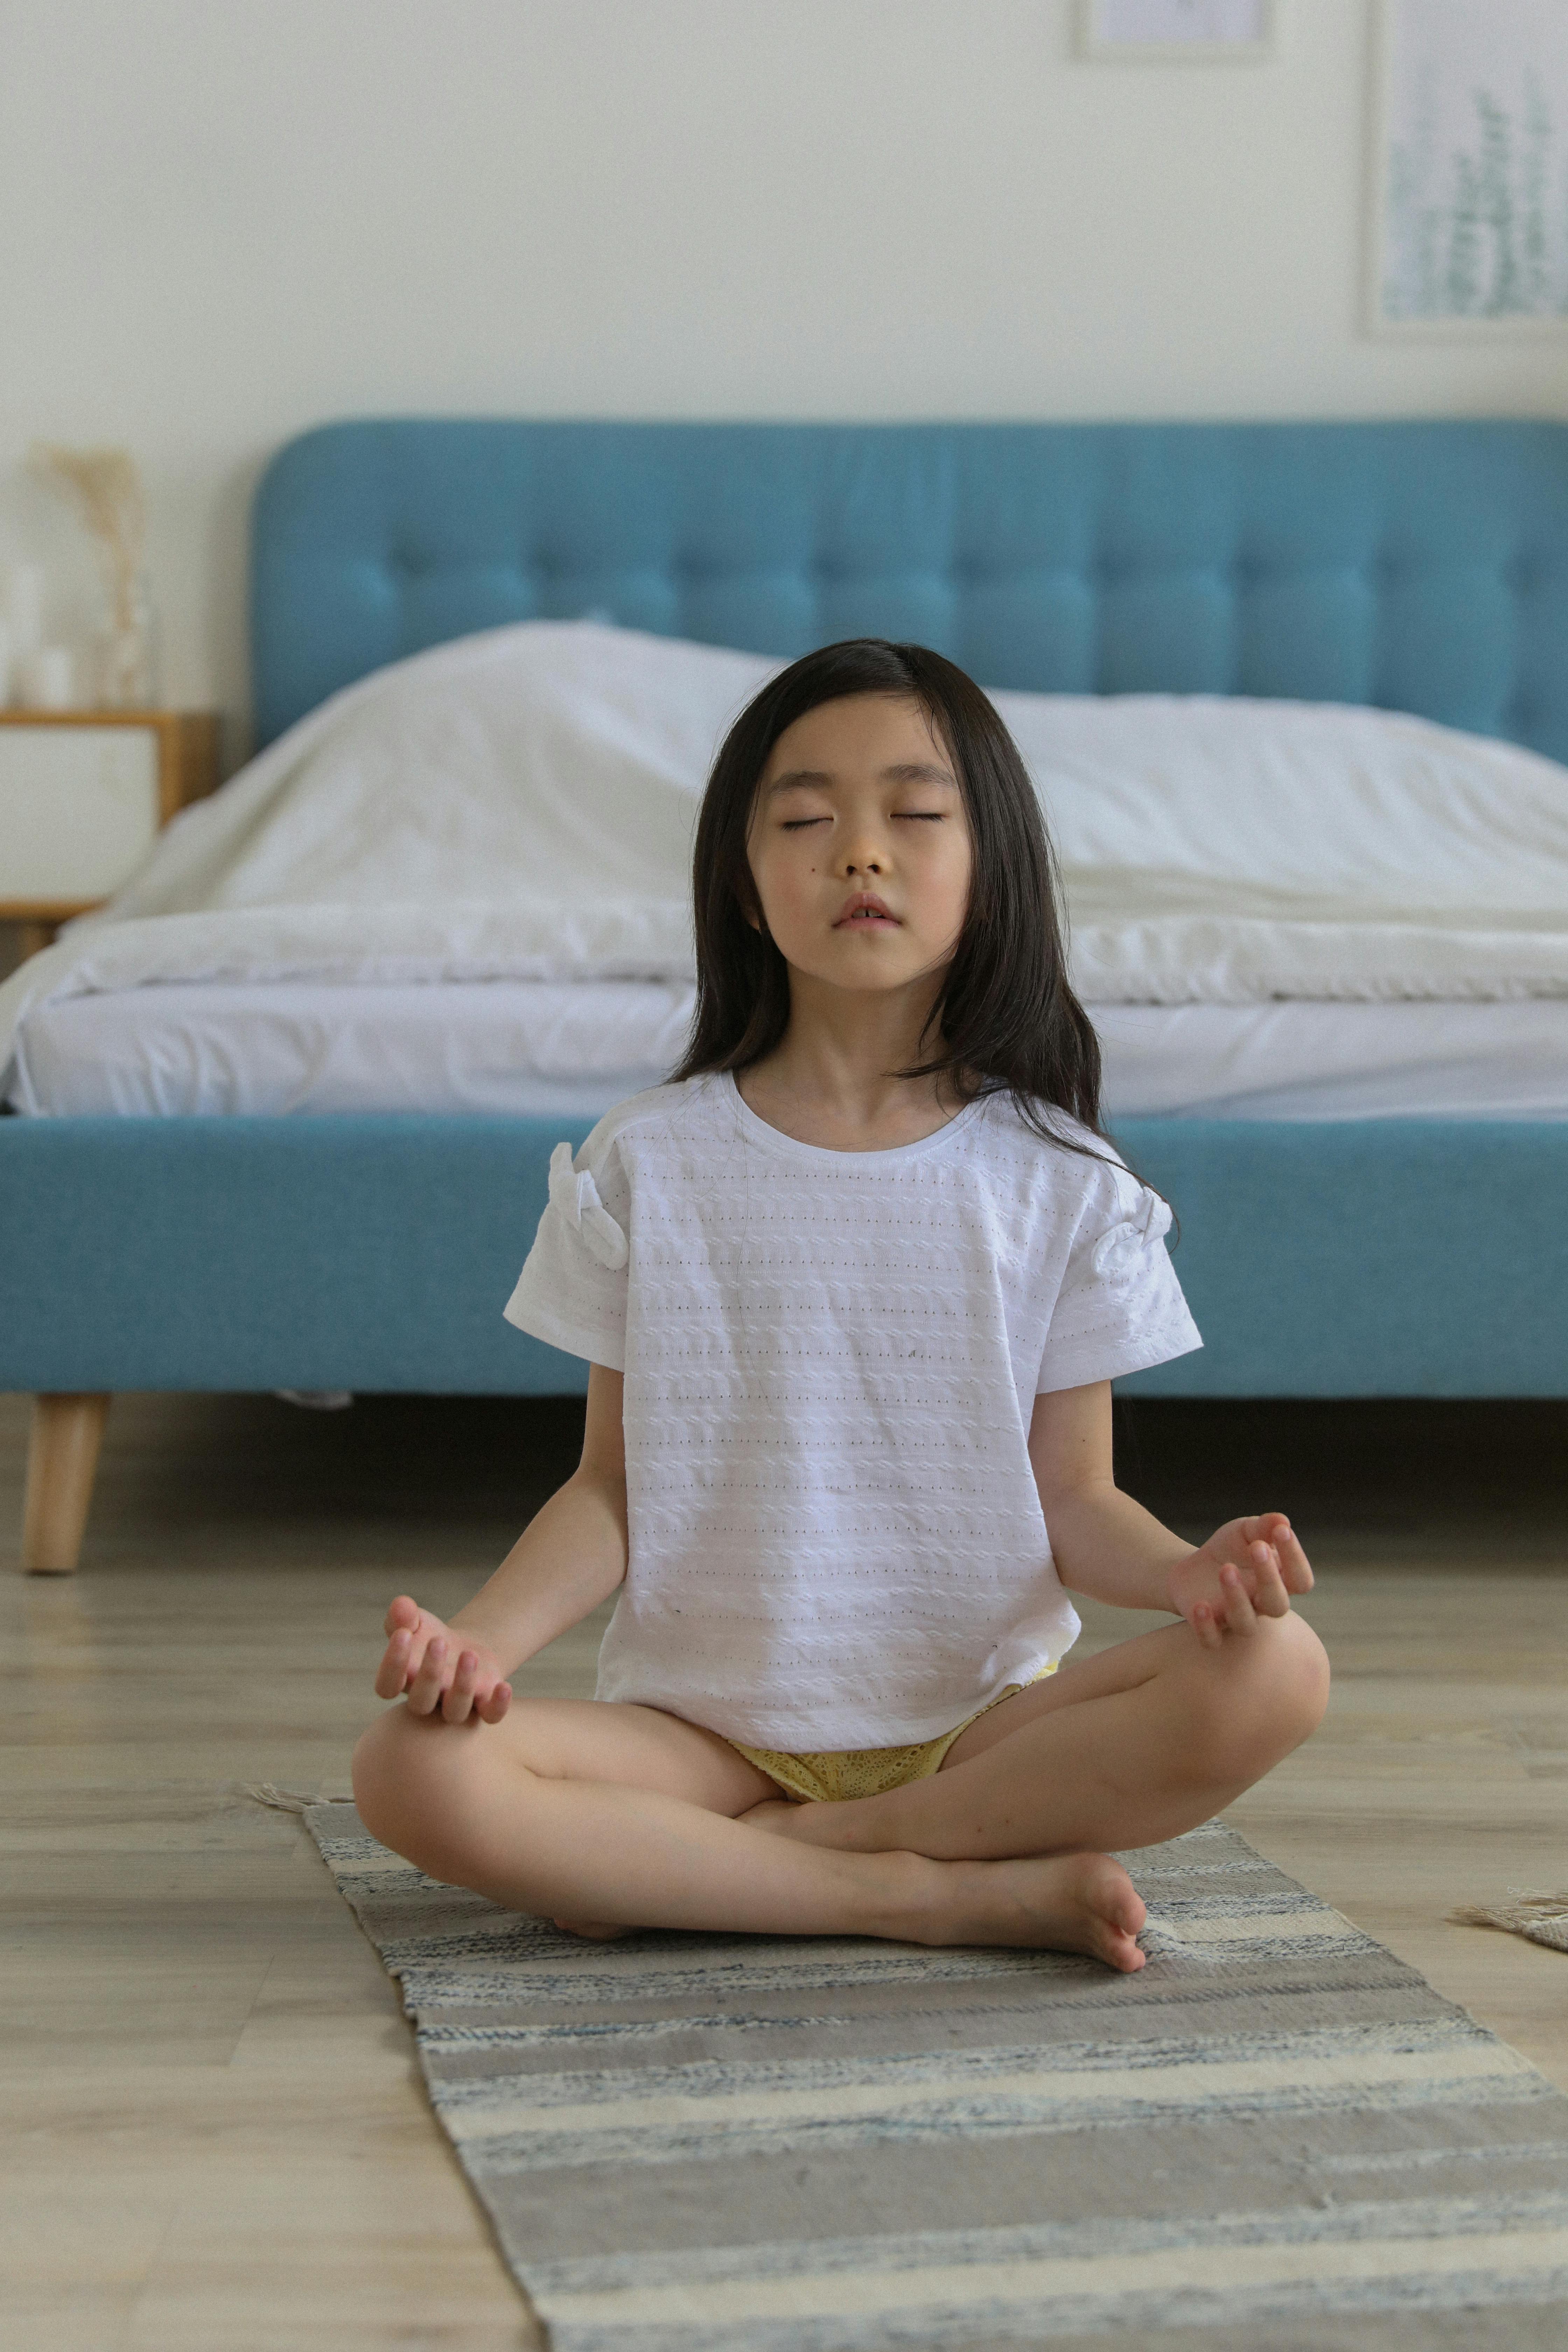 asian girl meditating in room in daytime